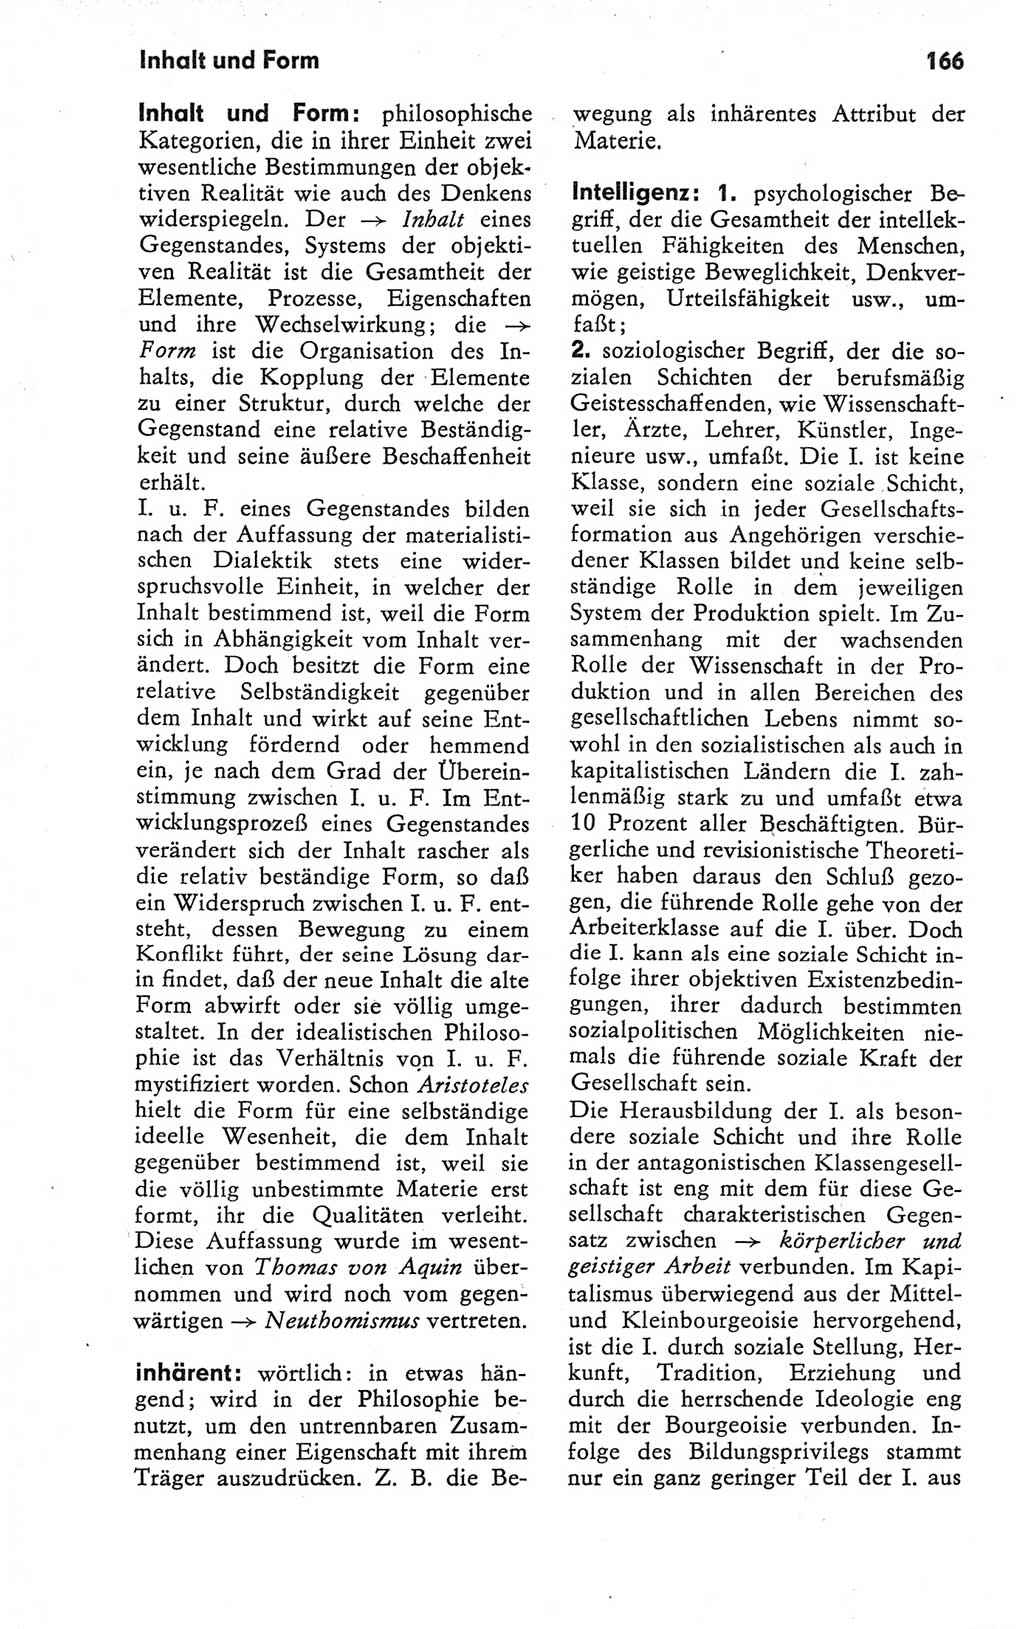 Kleines Wörterbuch der marxistisch-leninistischen Philosophie [Deutsche Demokratische Republik (DDR)] 1979, Seite 166 (Kl. Wb. ML Phil. DDR 1979, S. 166)